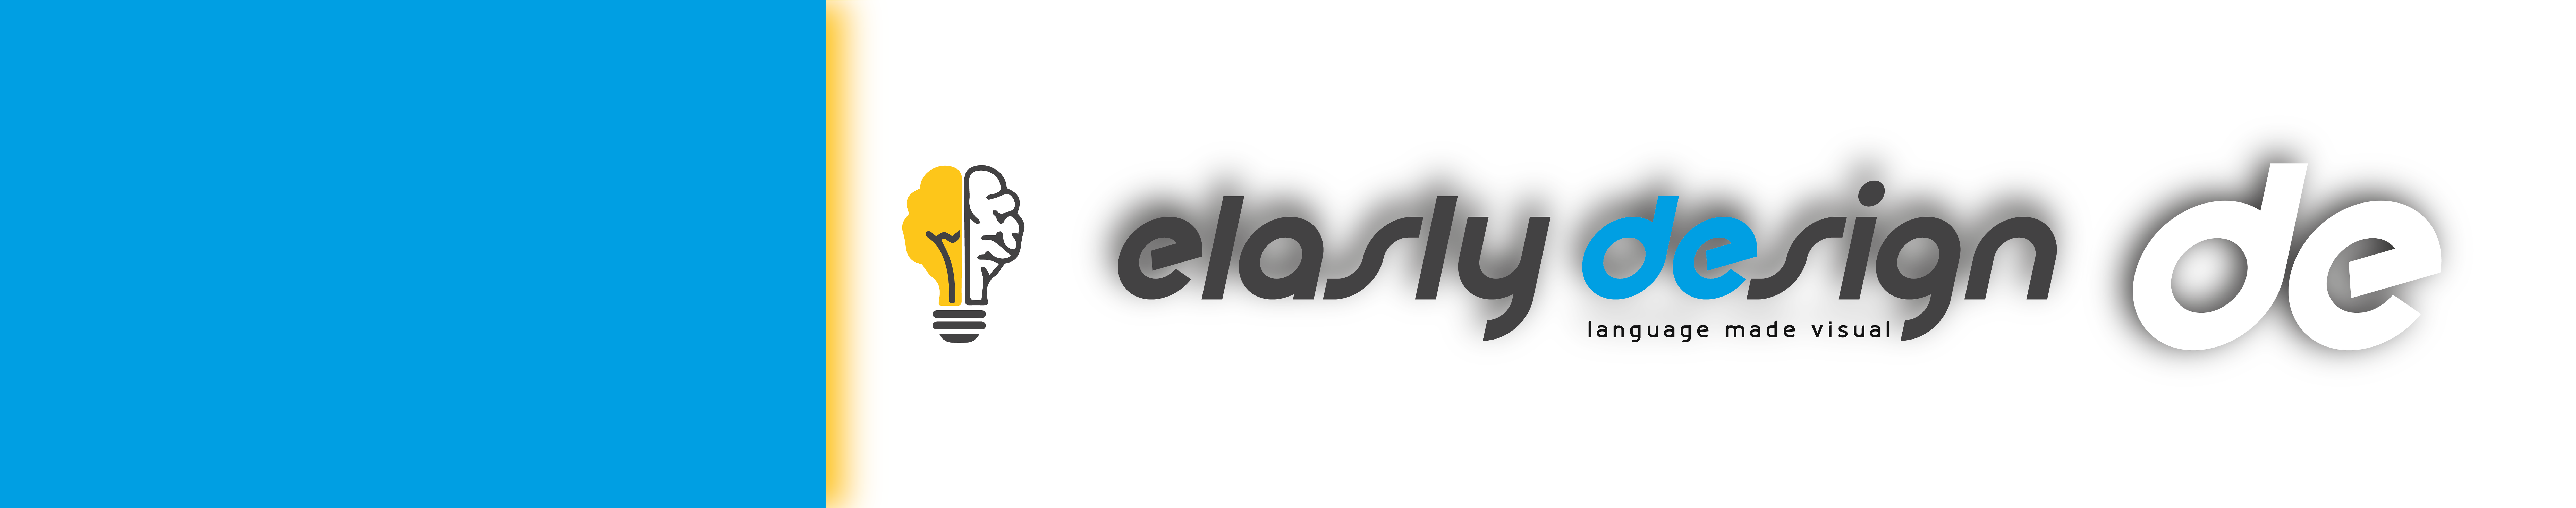 elasly design's profile banner